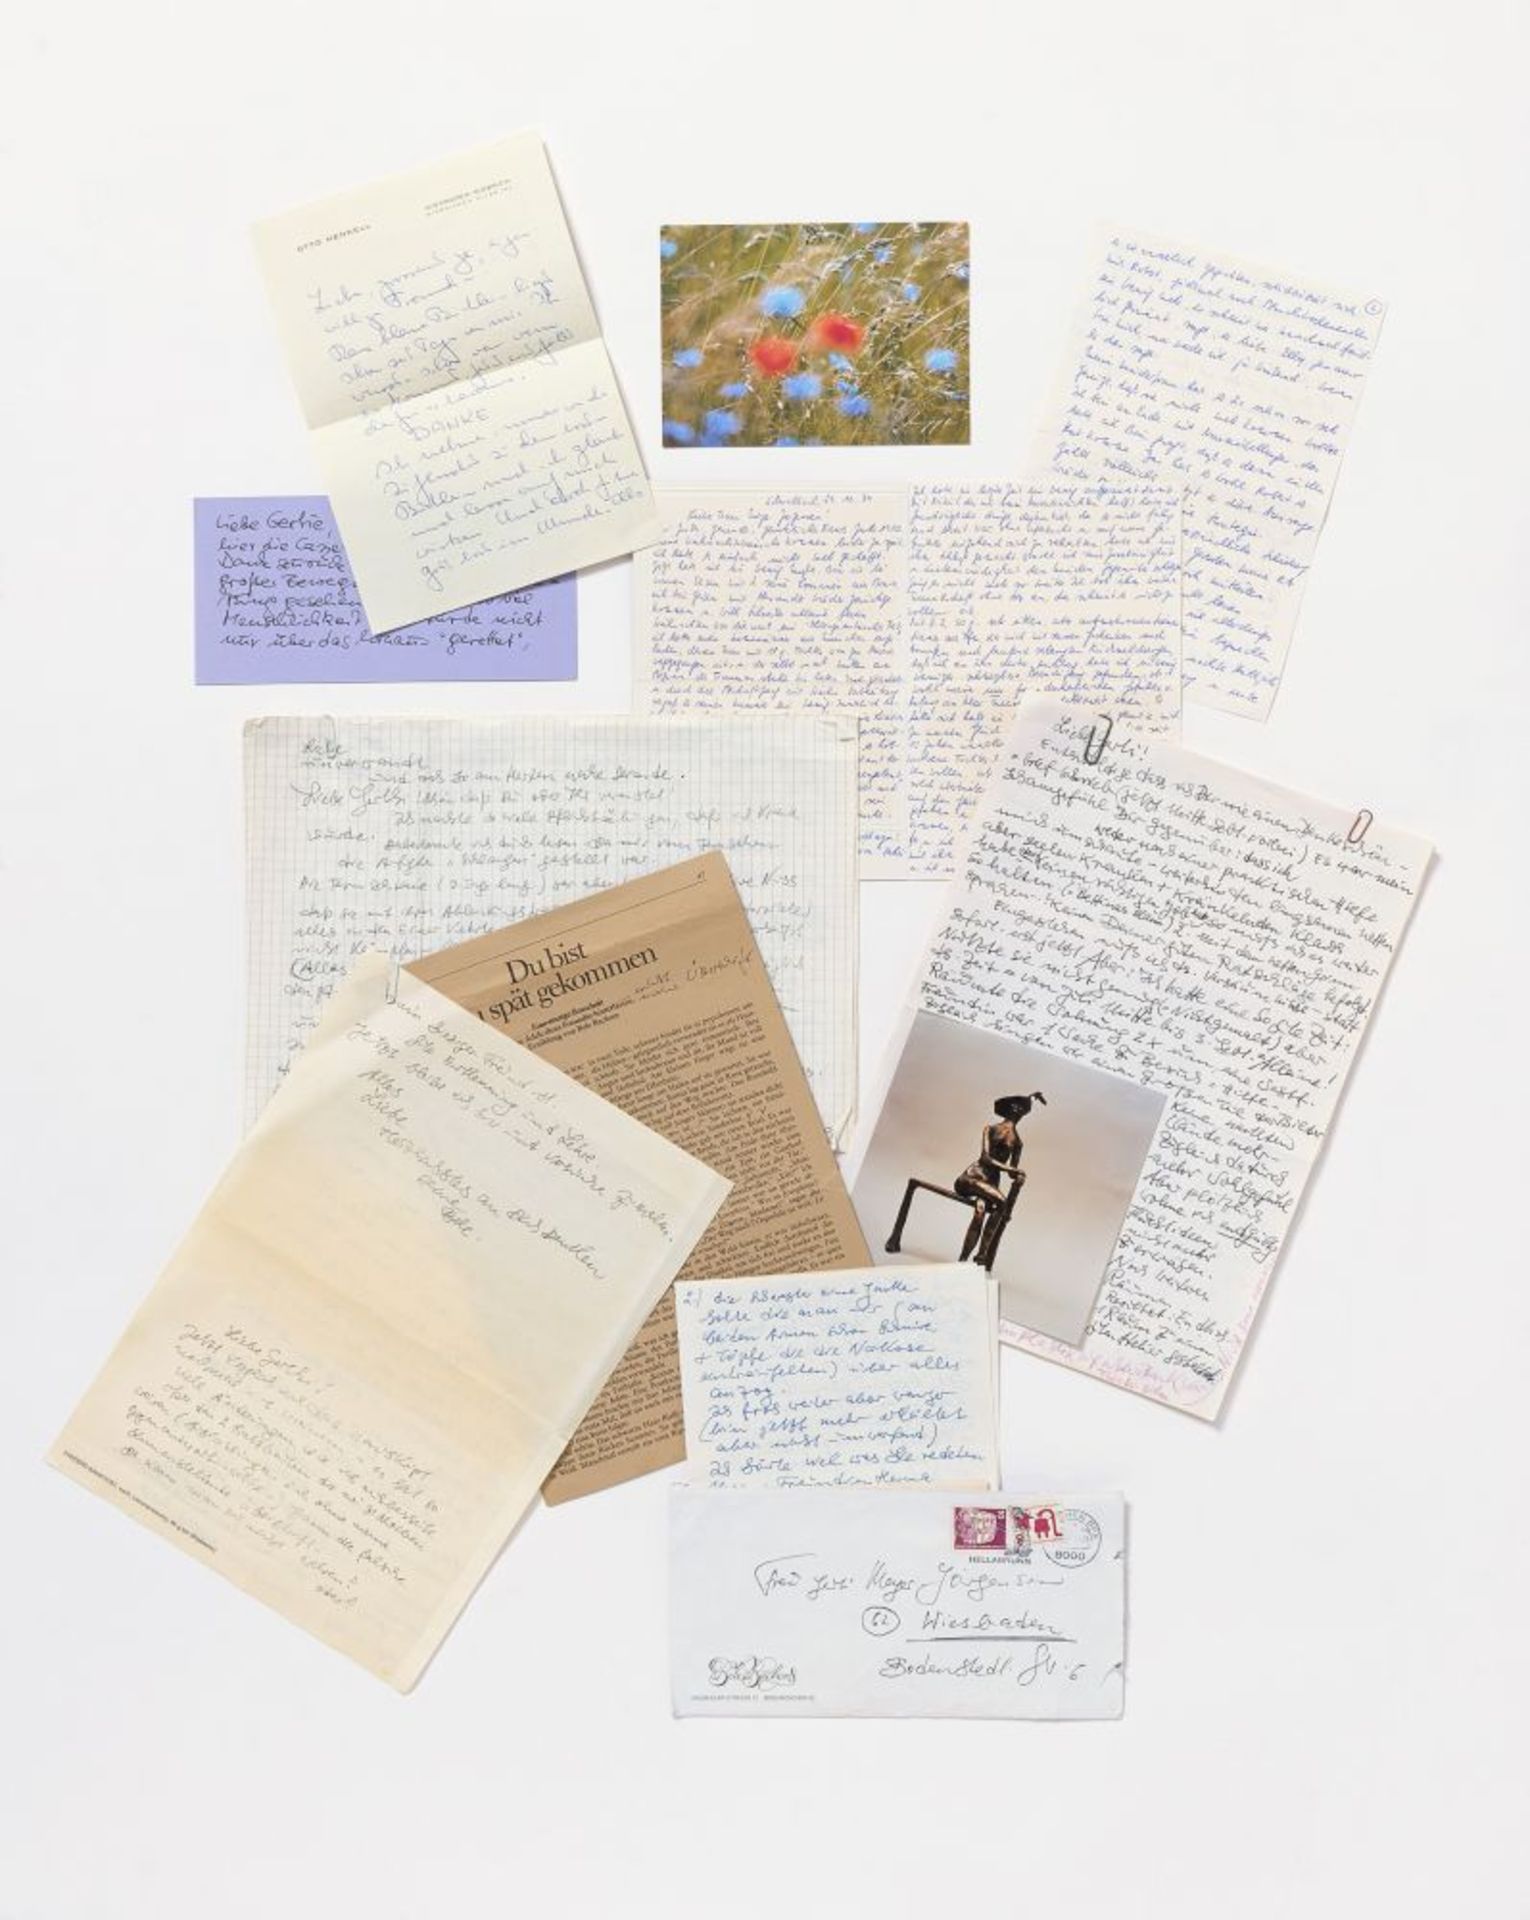 Bele Bachem, 40 eigh. Briefe, Karten, t. mit Zeichnungen. Von ca. 1974 bis um 2003. - An Gertrude Me - Bild 8 aus 12